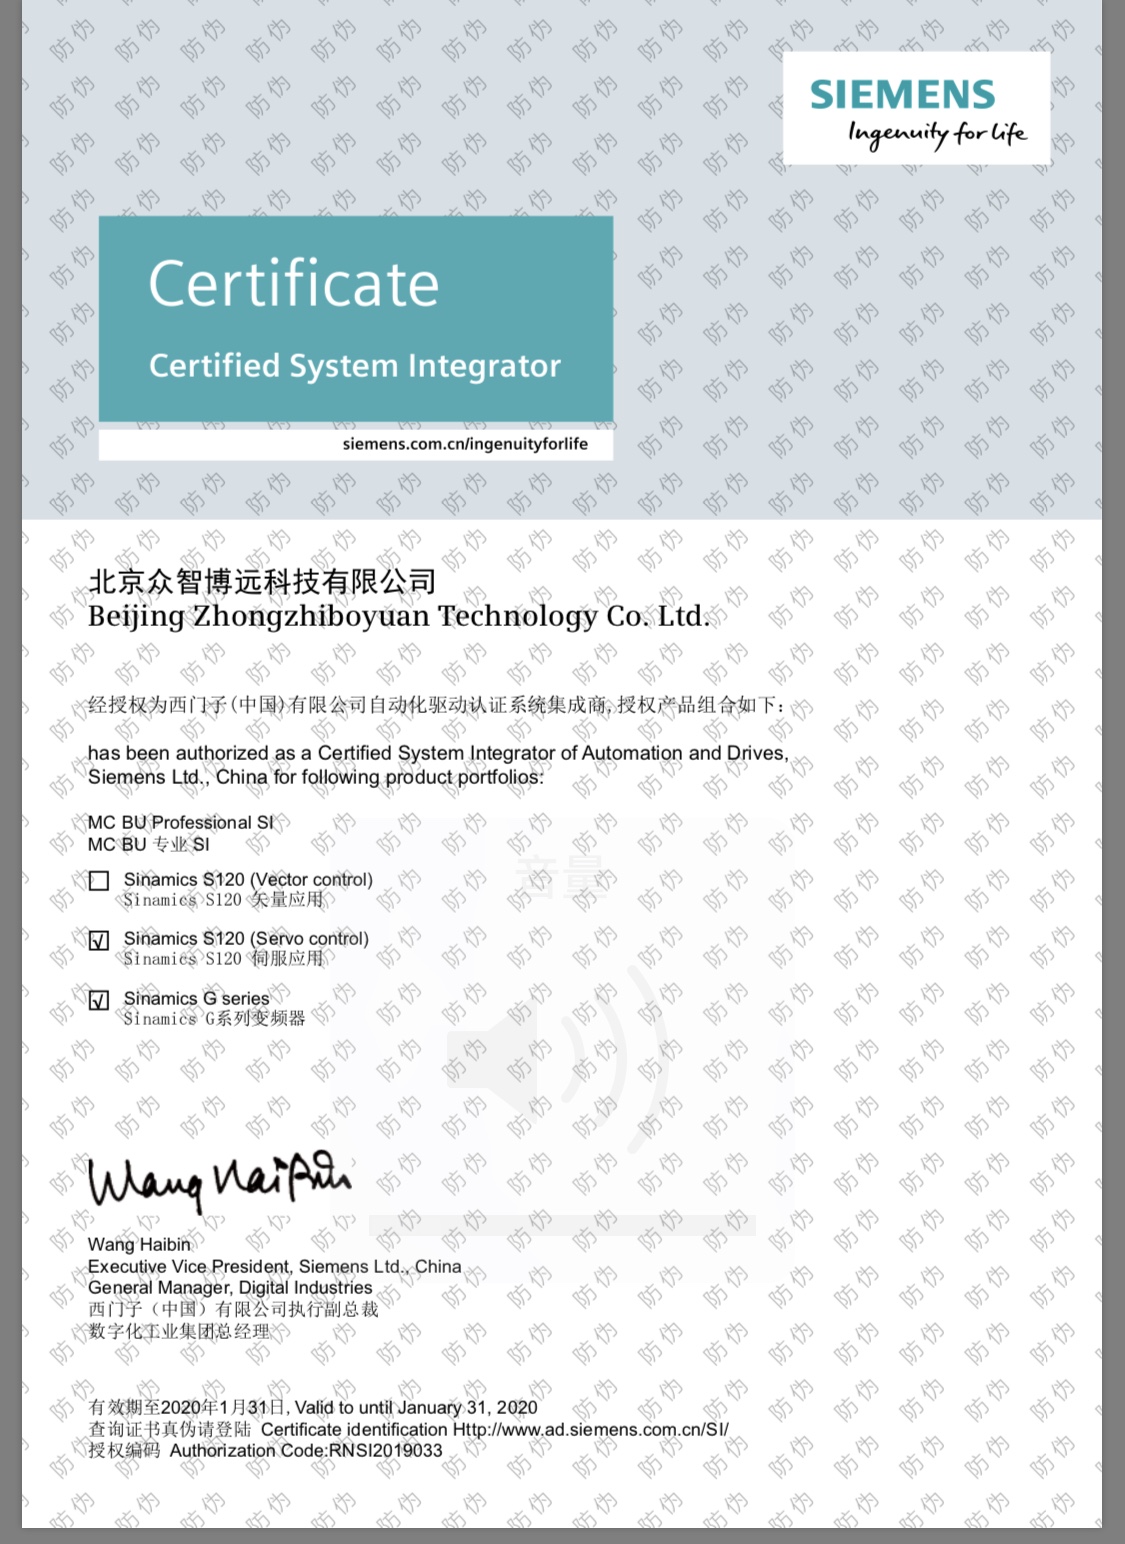 西门子授权证书-北京众智博远科技有限公司.jpg